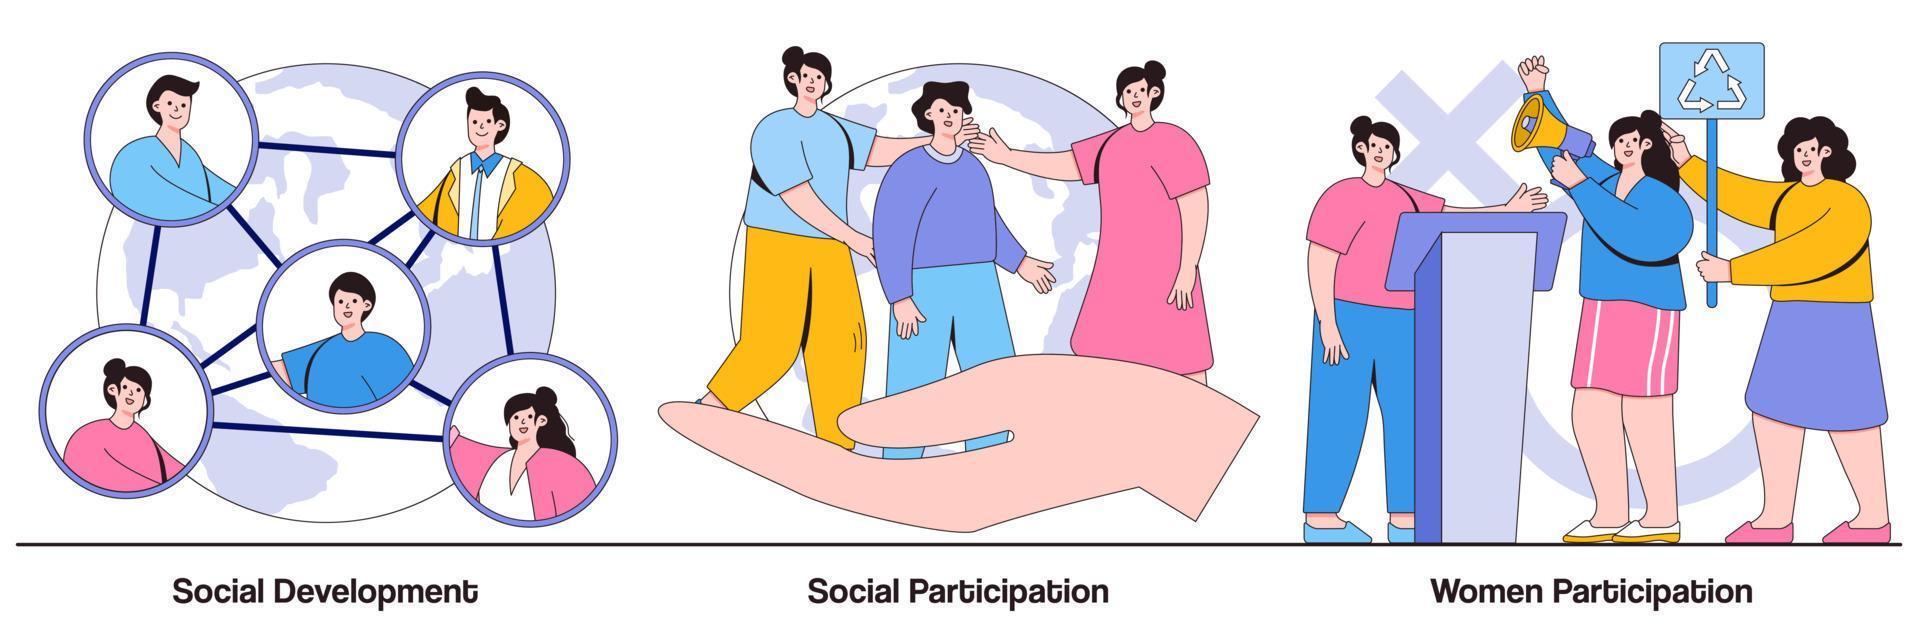 desarrollo social y participación, paquete ilustrado de participación de la mujer. vector